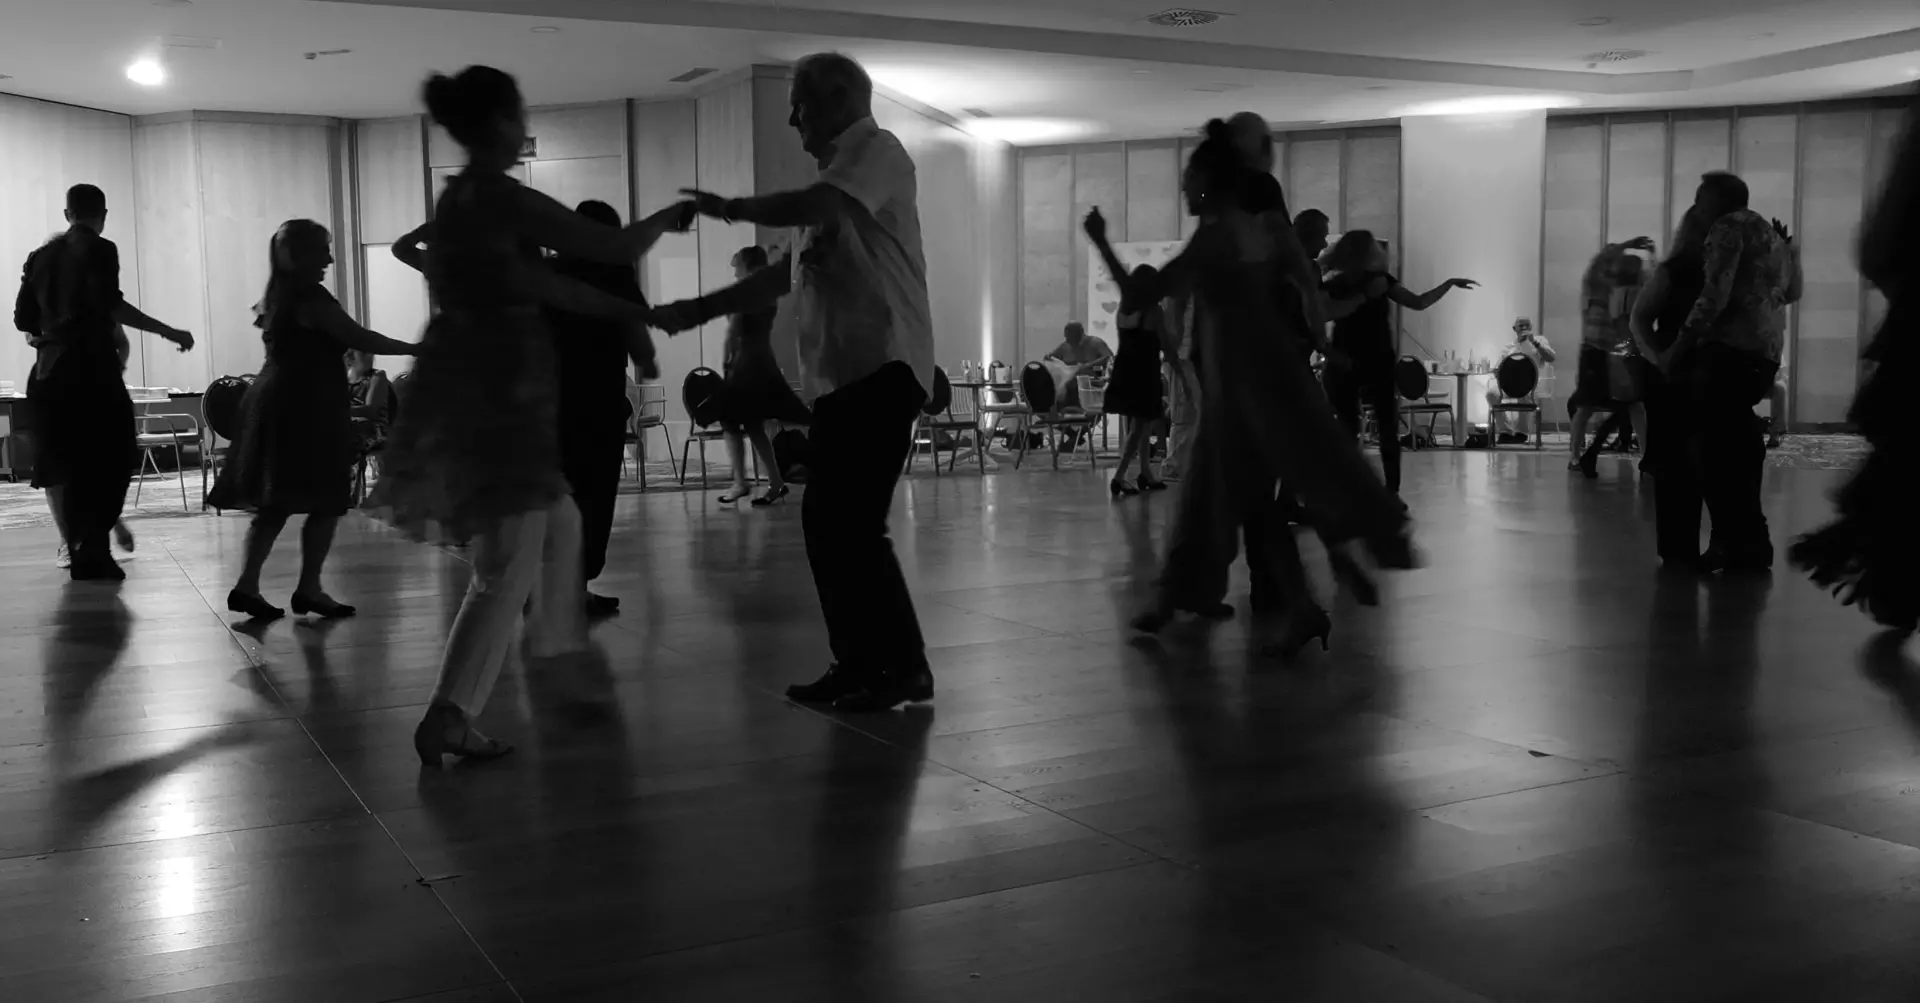 Social dancing community